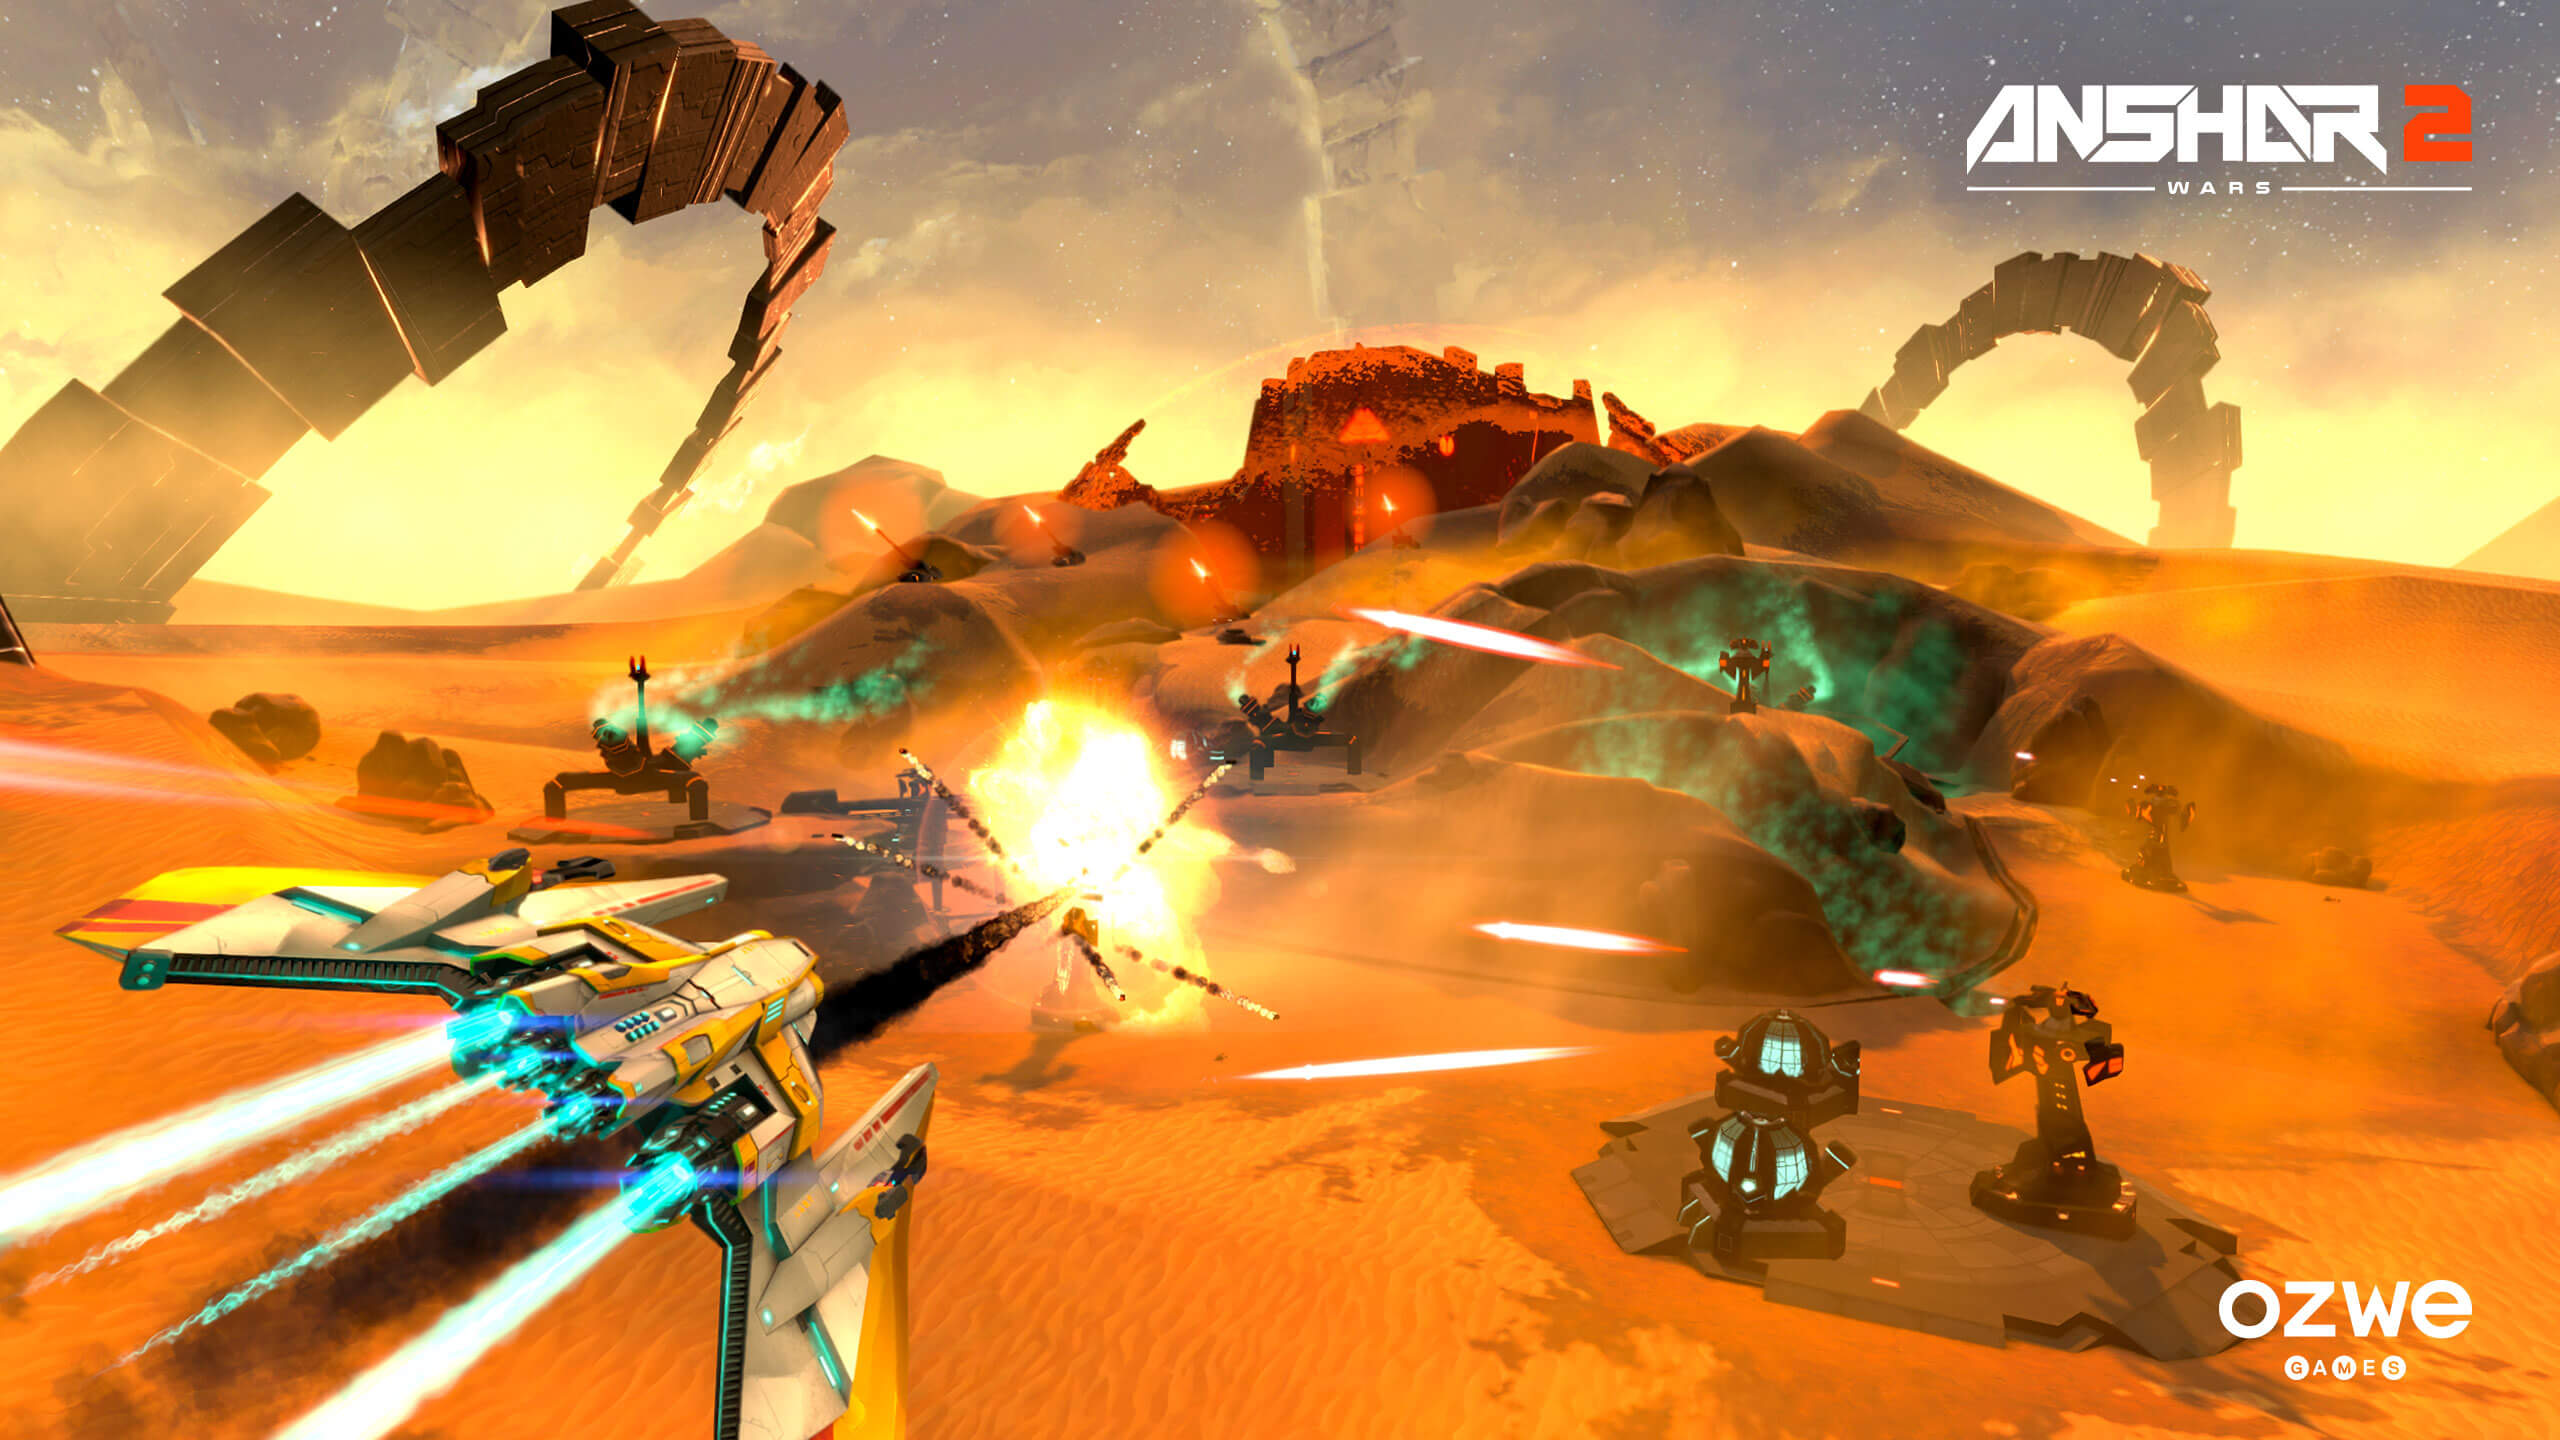 Anshar Wars 2 - Oculus Rift screenshot